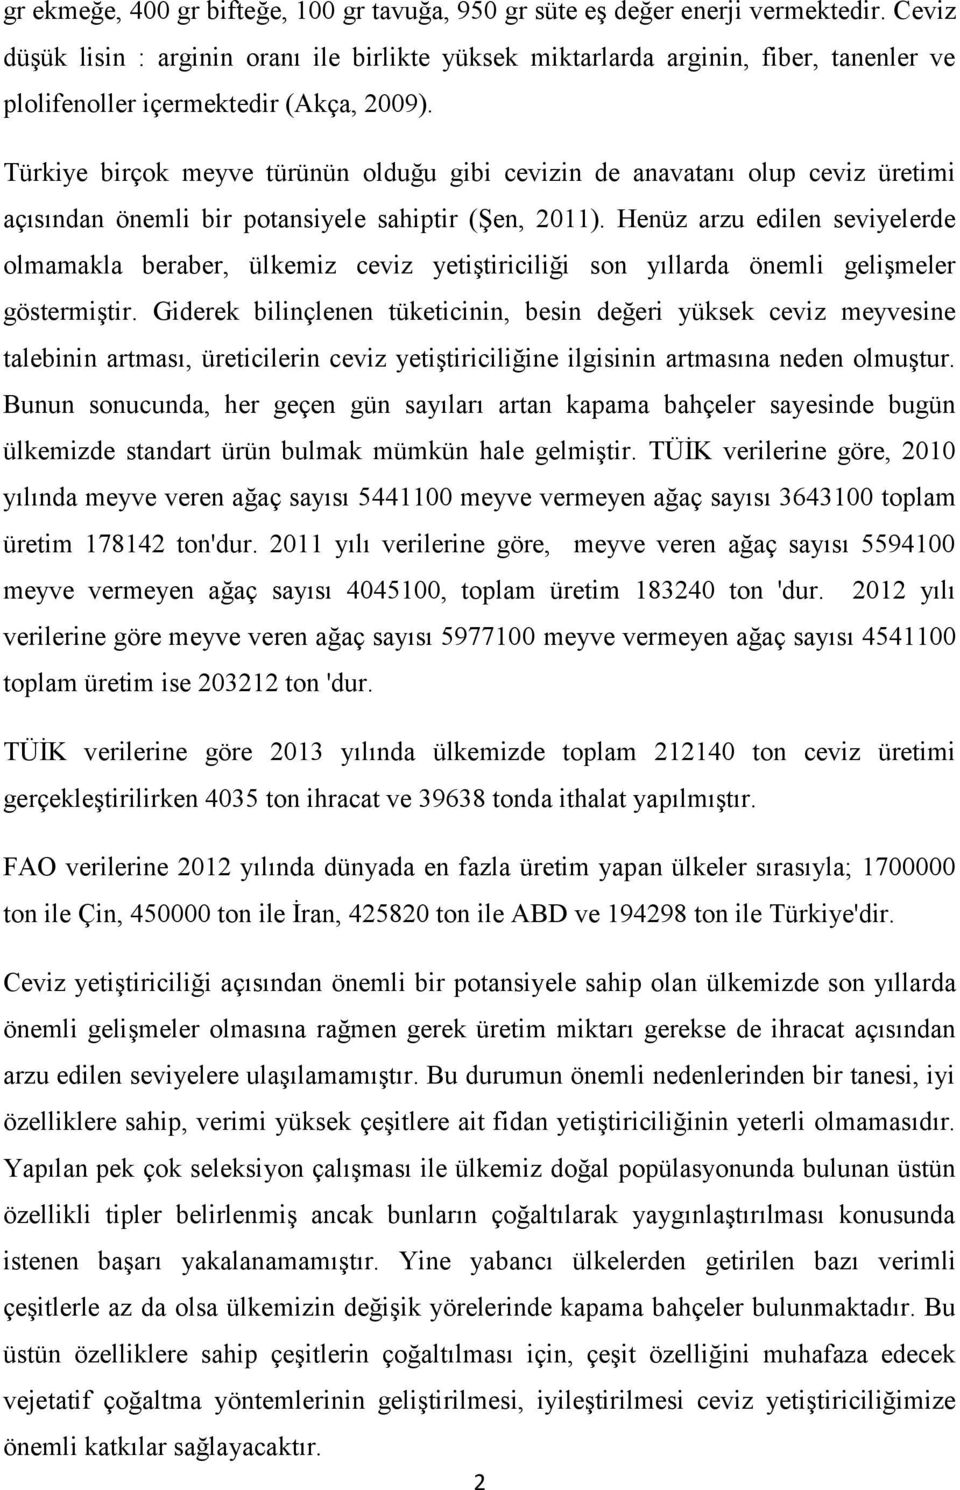 Türkiye birçok meyve türünün olduğu gibi cevizin de anavatanı olup ceviz üretimi açısından önemli bir potansiyele sahiptir (Şen, 2011).